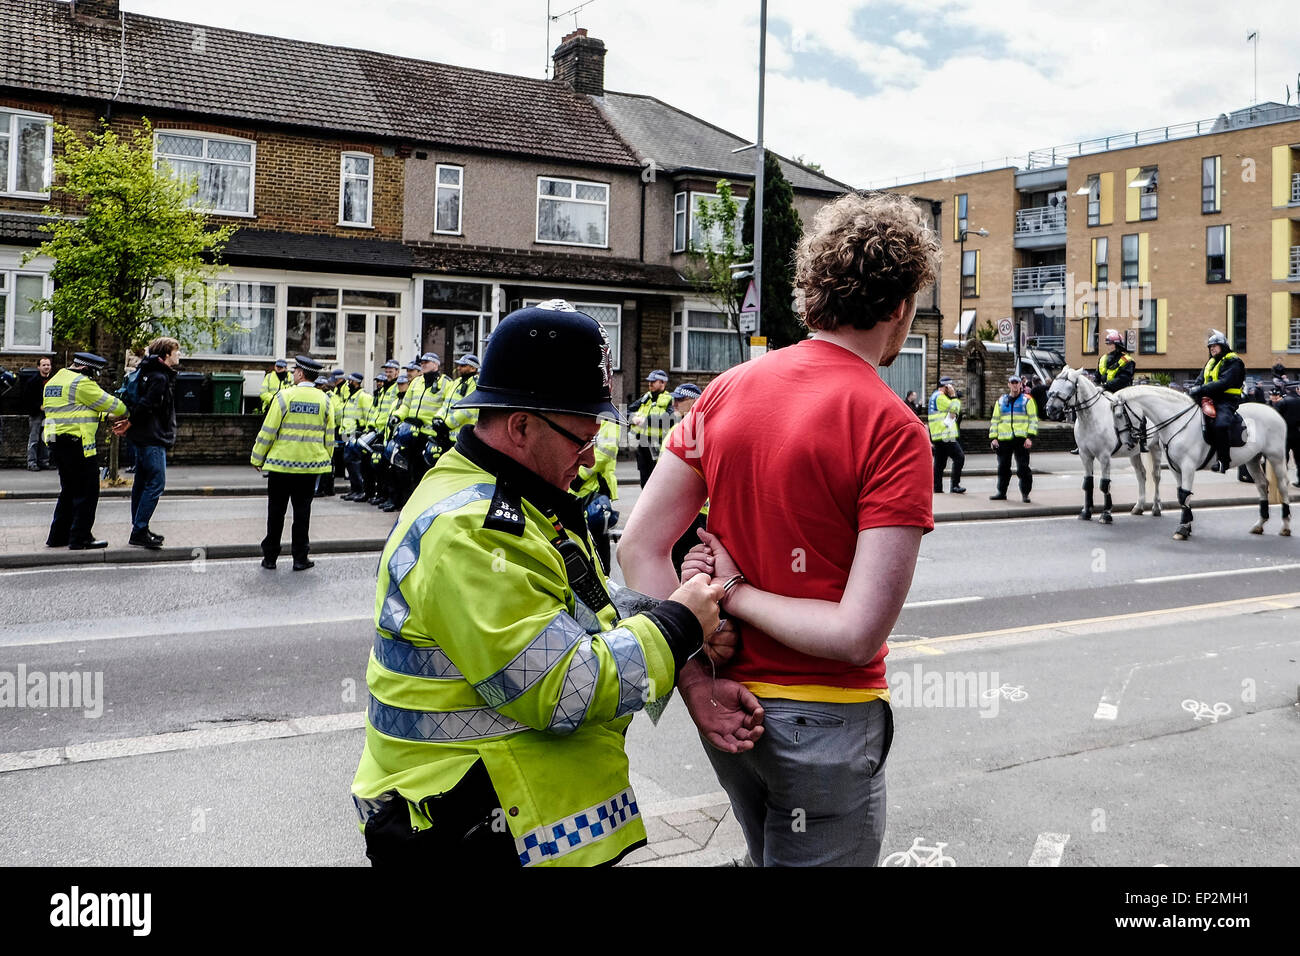 Un jeune homme arrêté alors que des anti-fascistes se rassemblent pour protester contre la Ligue de défense anglaise. Banque D'Images